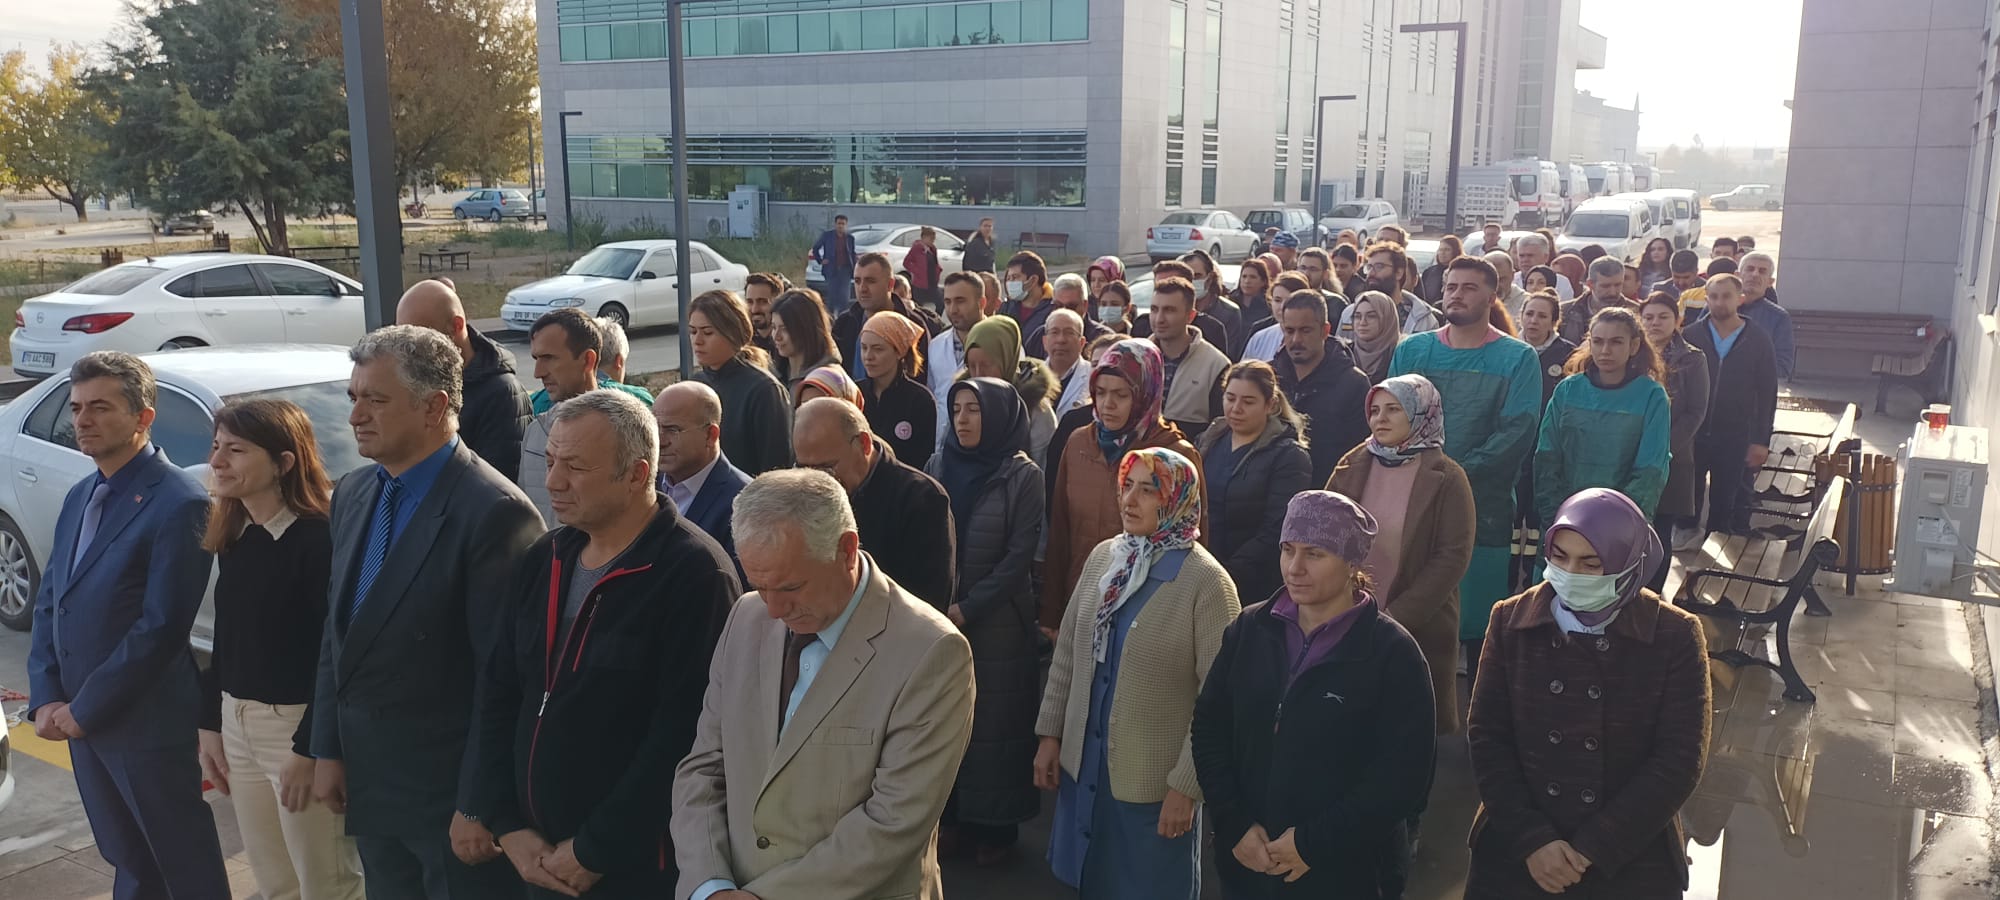 Karaman Ağız ve Diş Sağlığı Merkezi'nde 10 Kasım Atatürk'ü anma töreni gerçekleştirildi.